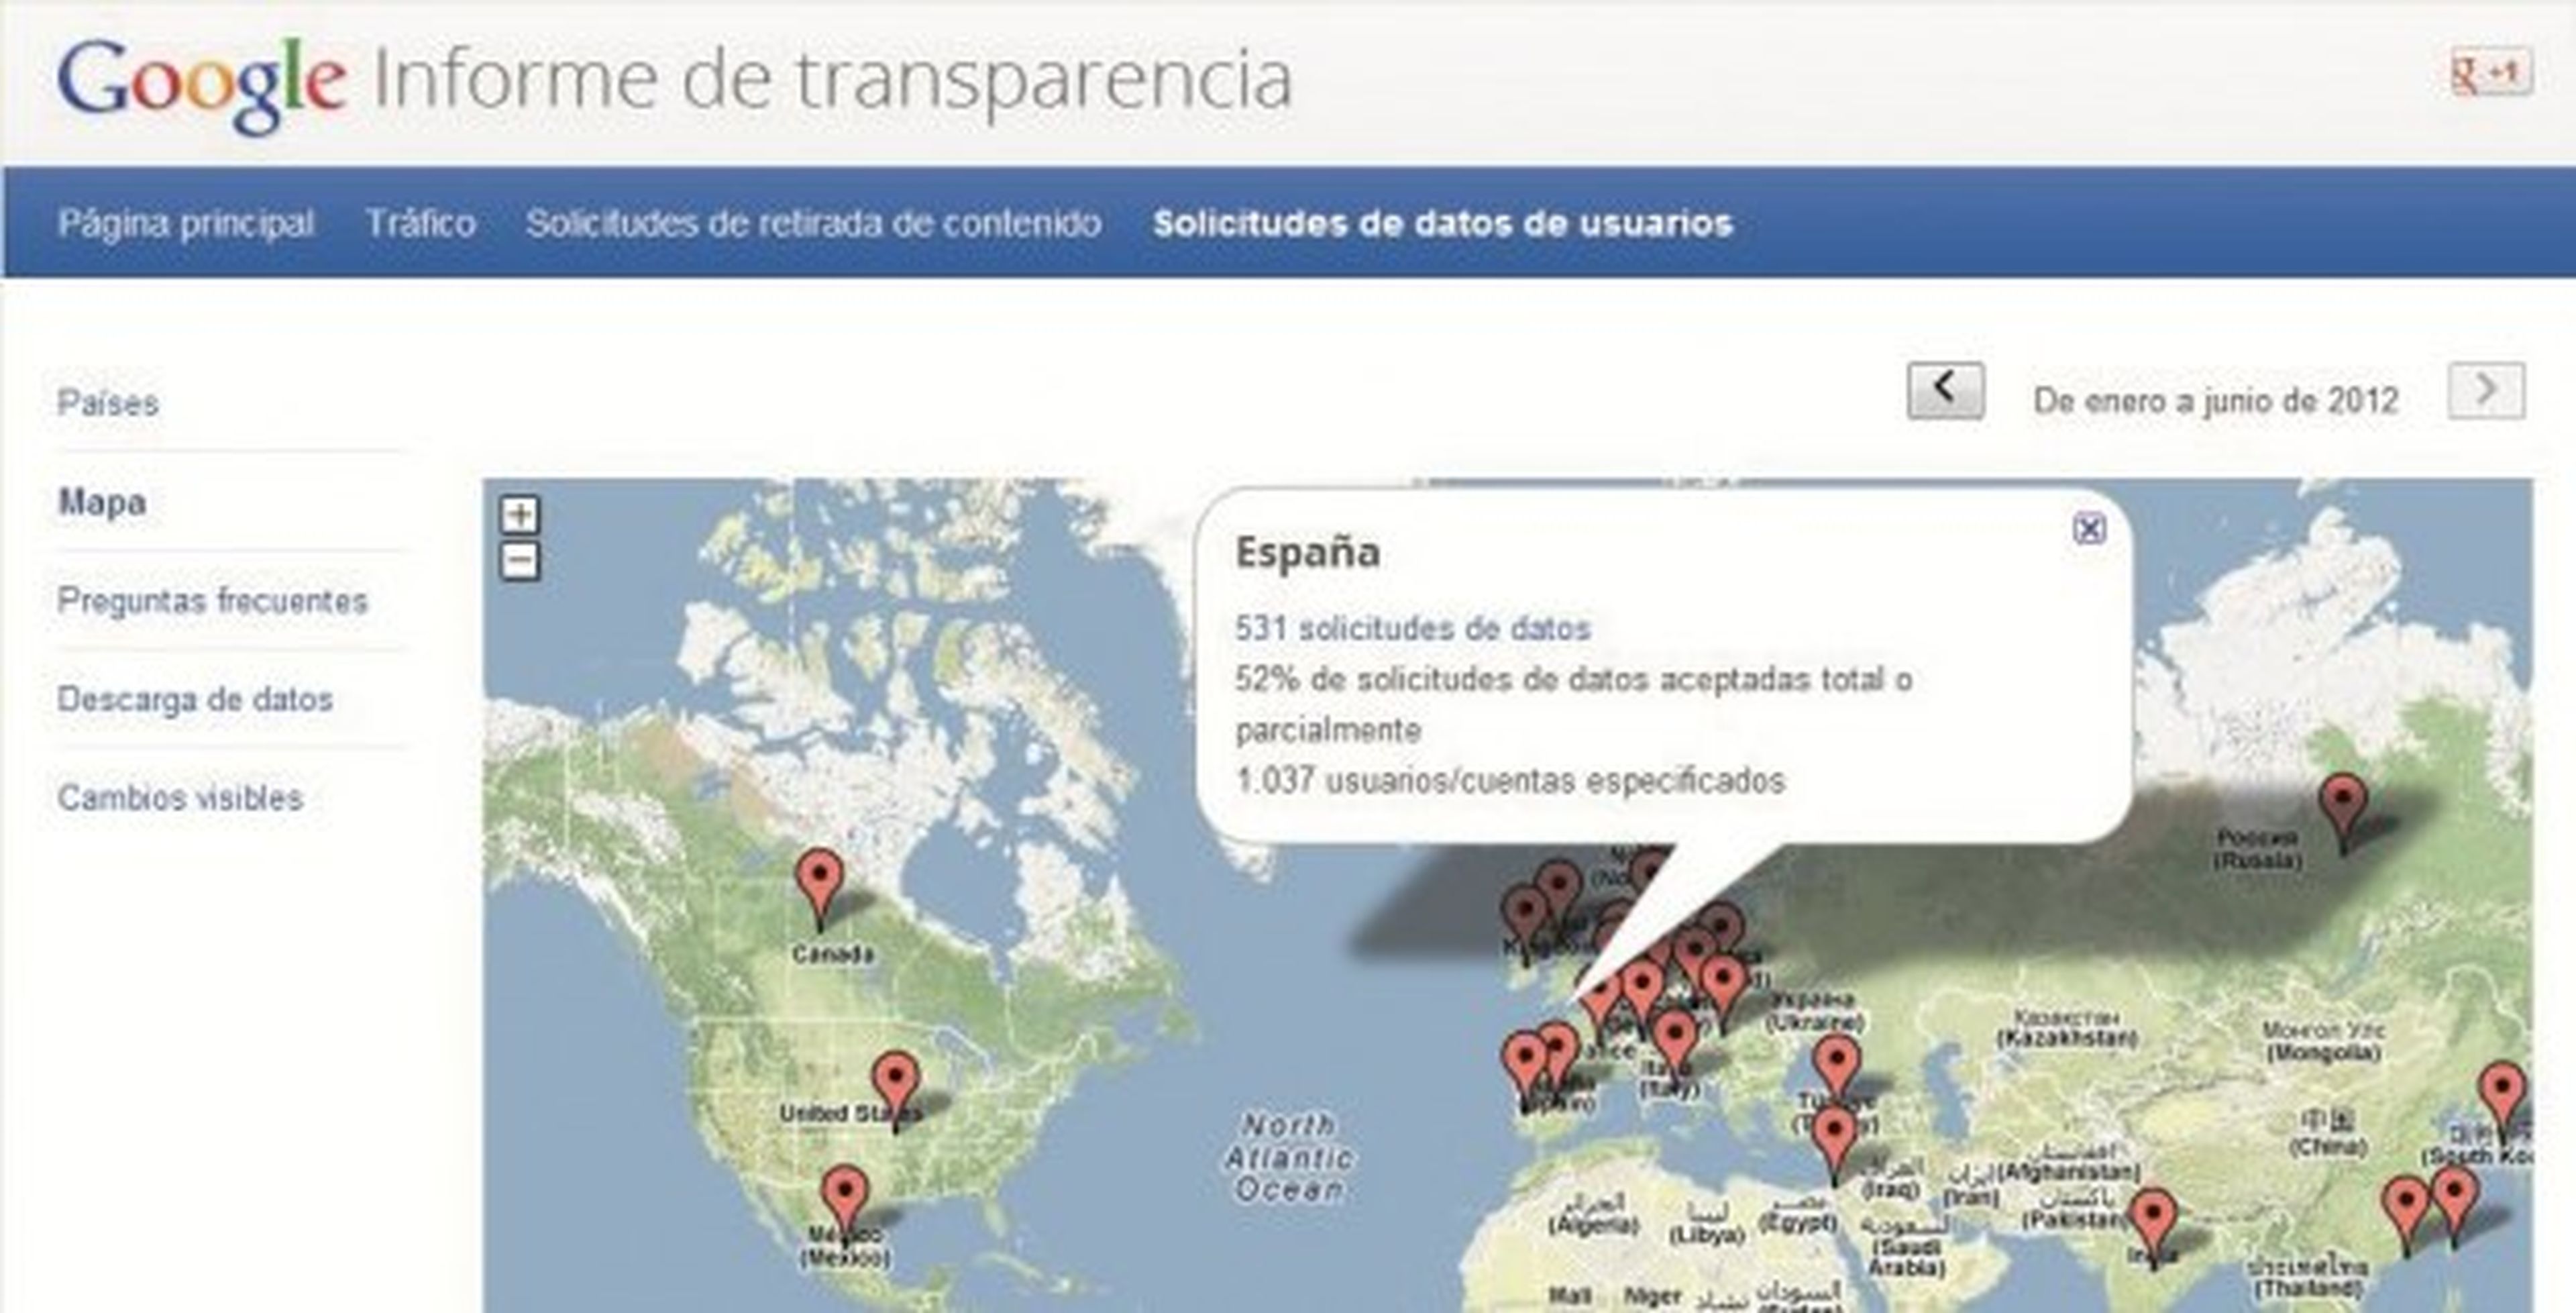 España es el país con mayor número de peticiones de retirada de contenidos a Google.